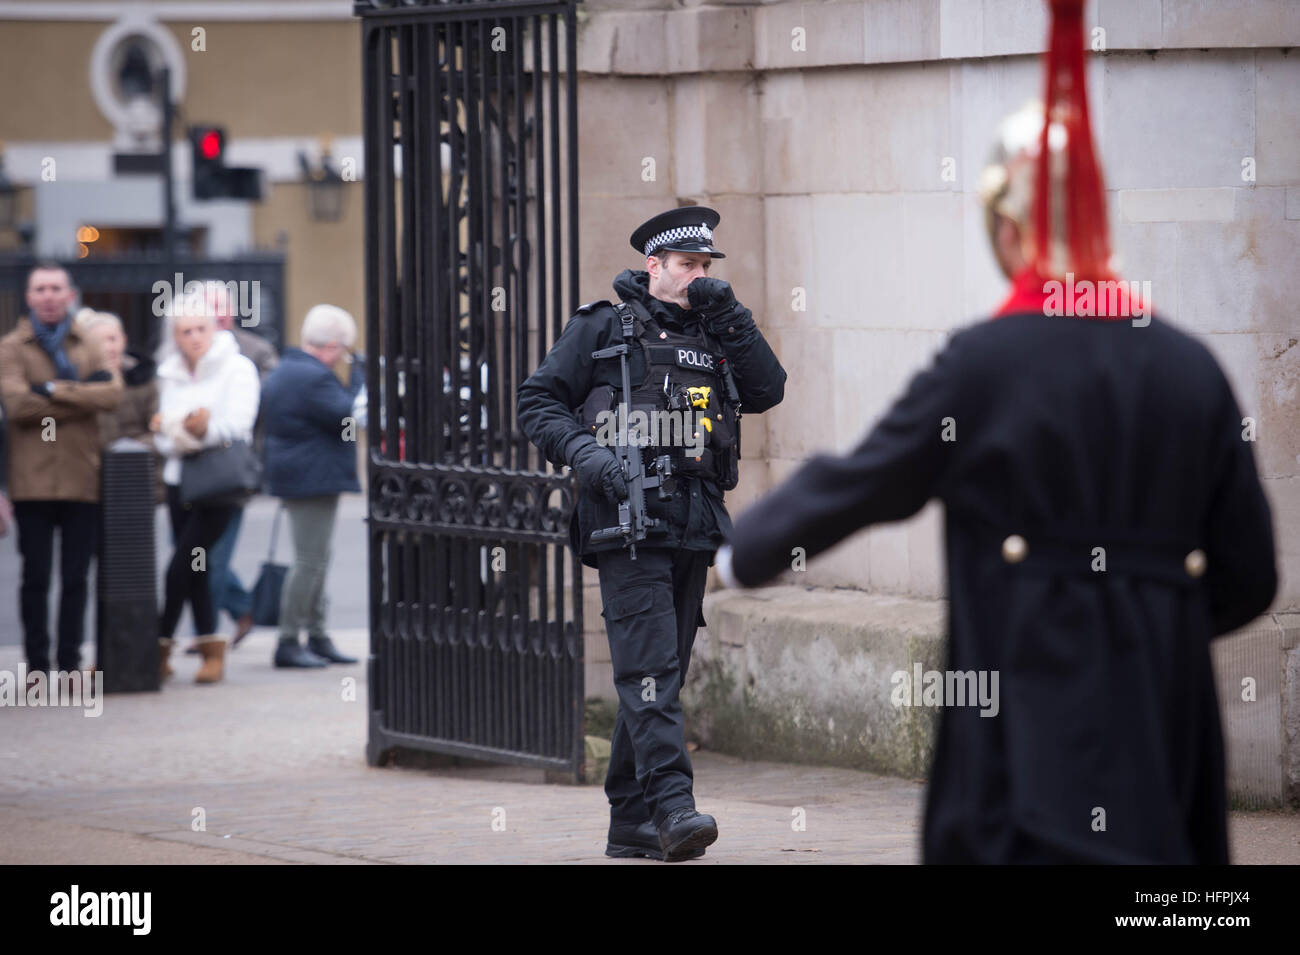 Eine bewaffnete Polizisten herein Horse Guards Parade im Zentrum von London vor den Feiern des neuen Jahres, da Tausende Polizisten einen schützenden Ring um die Stadt Versatzstück Feuerwerk, bieten werden, während Taktiken angepasst wurden nach der diesjährigen terroristischen Gräueltaten in Europa. Stockfoto